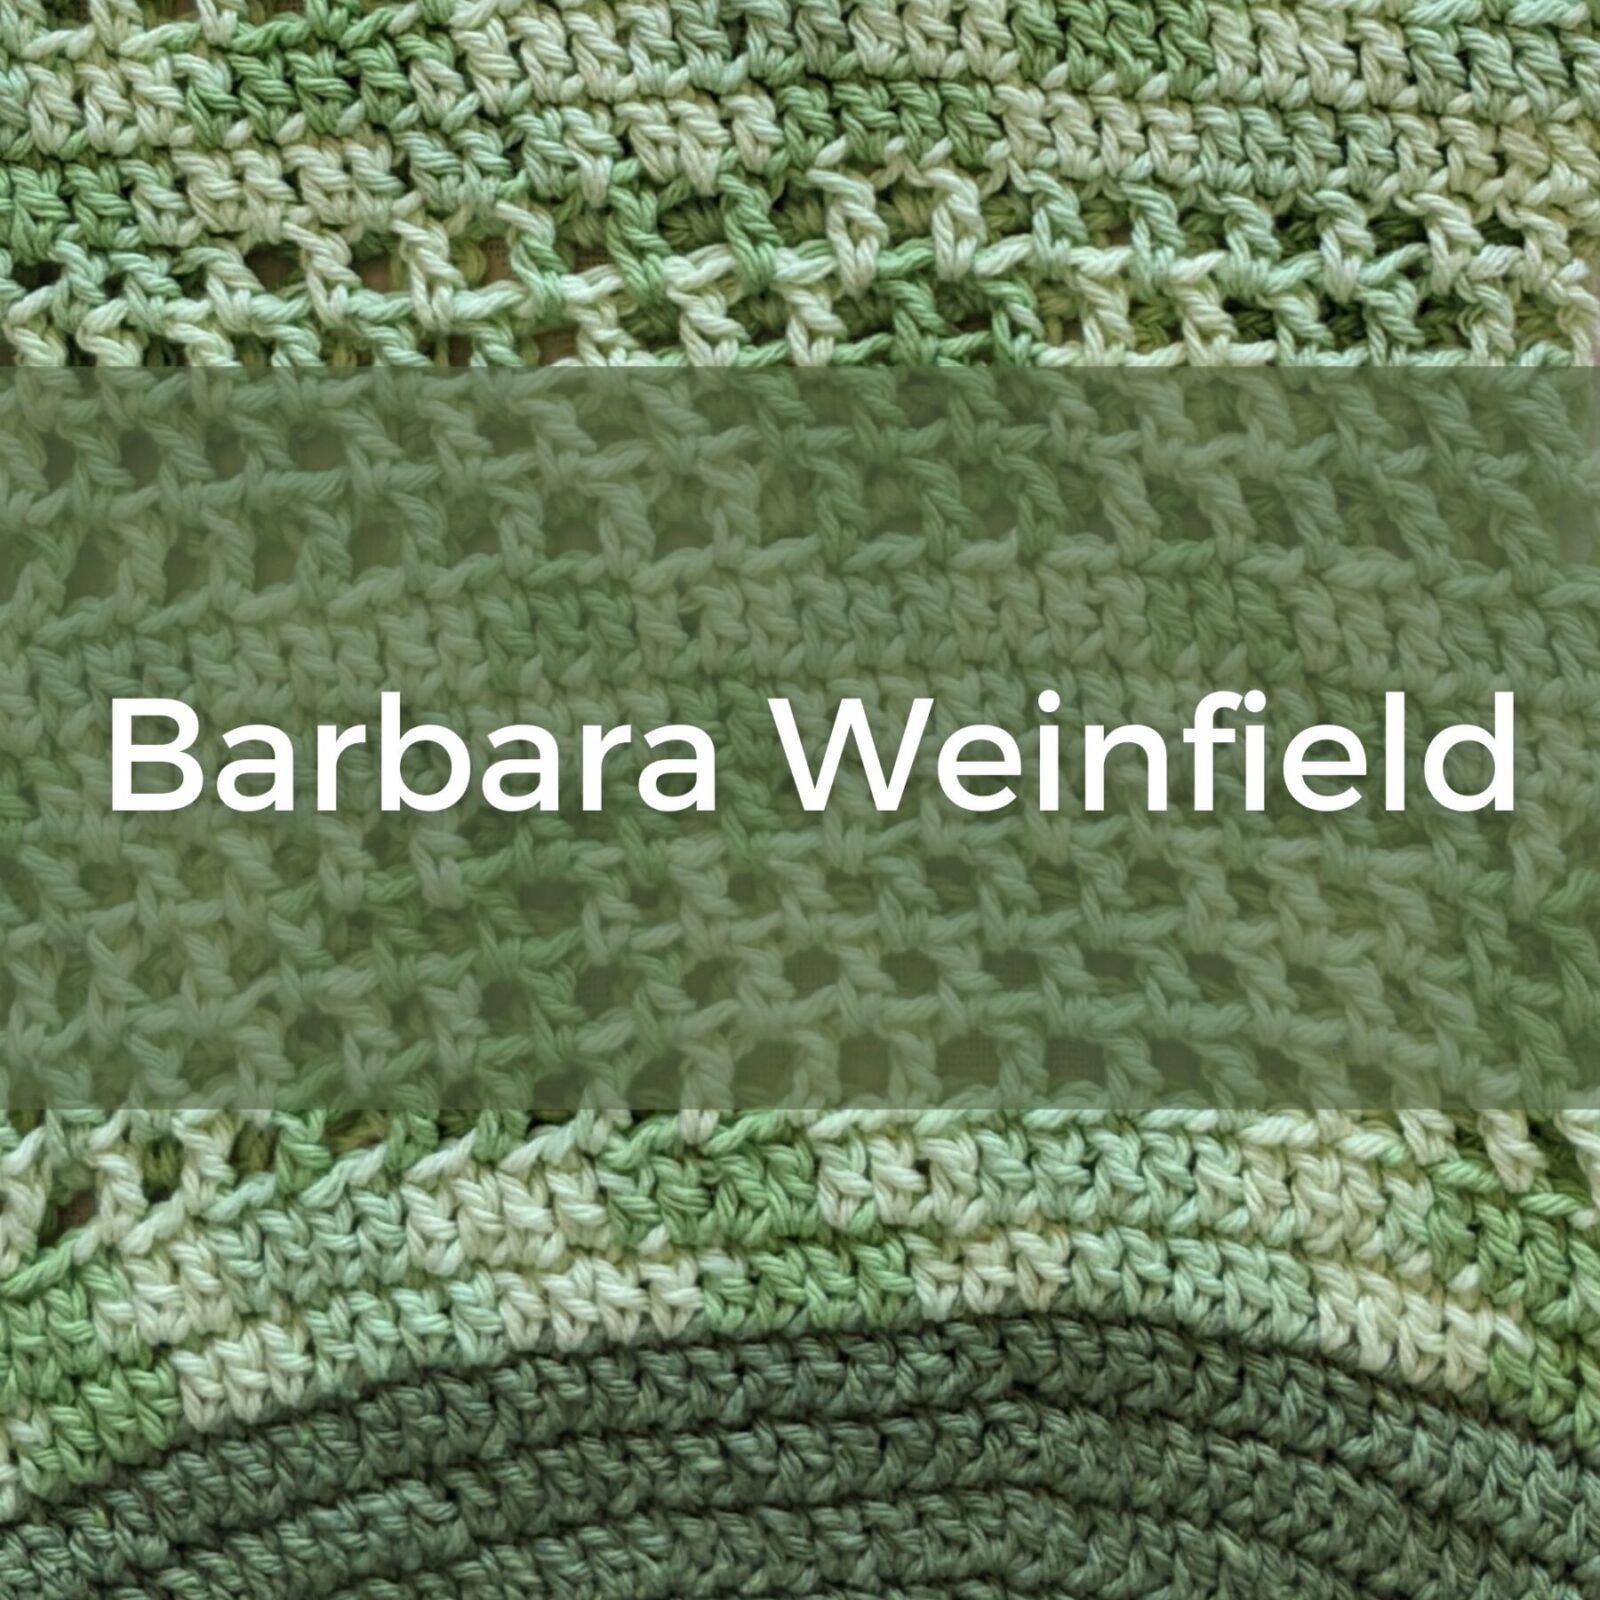 Barbara Weinfield, fiber